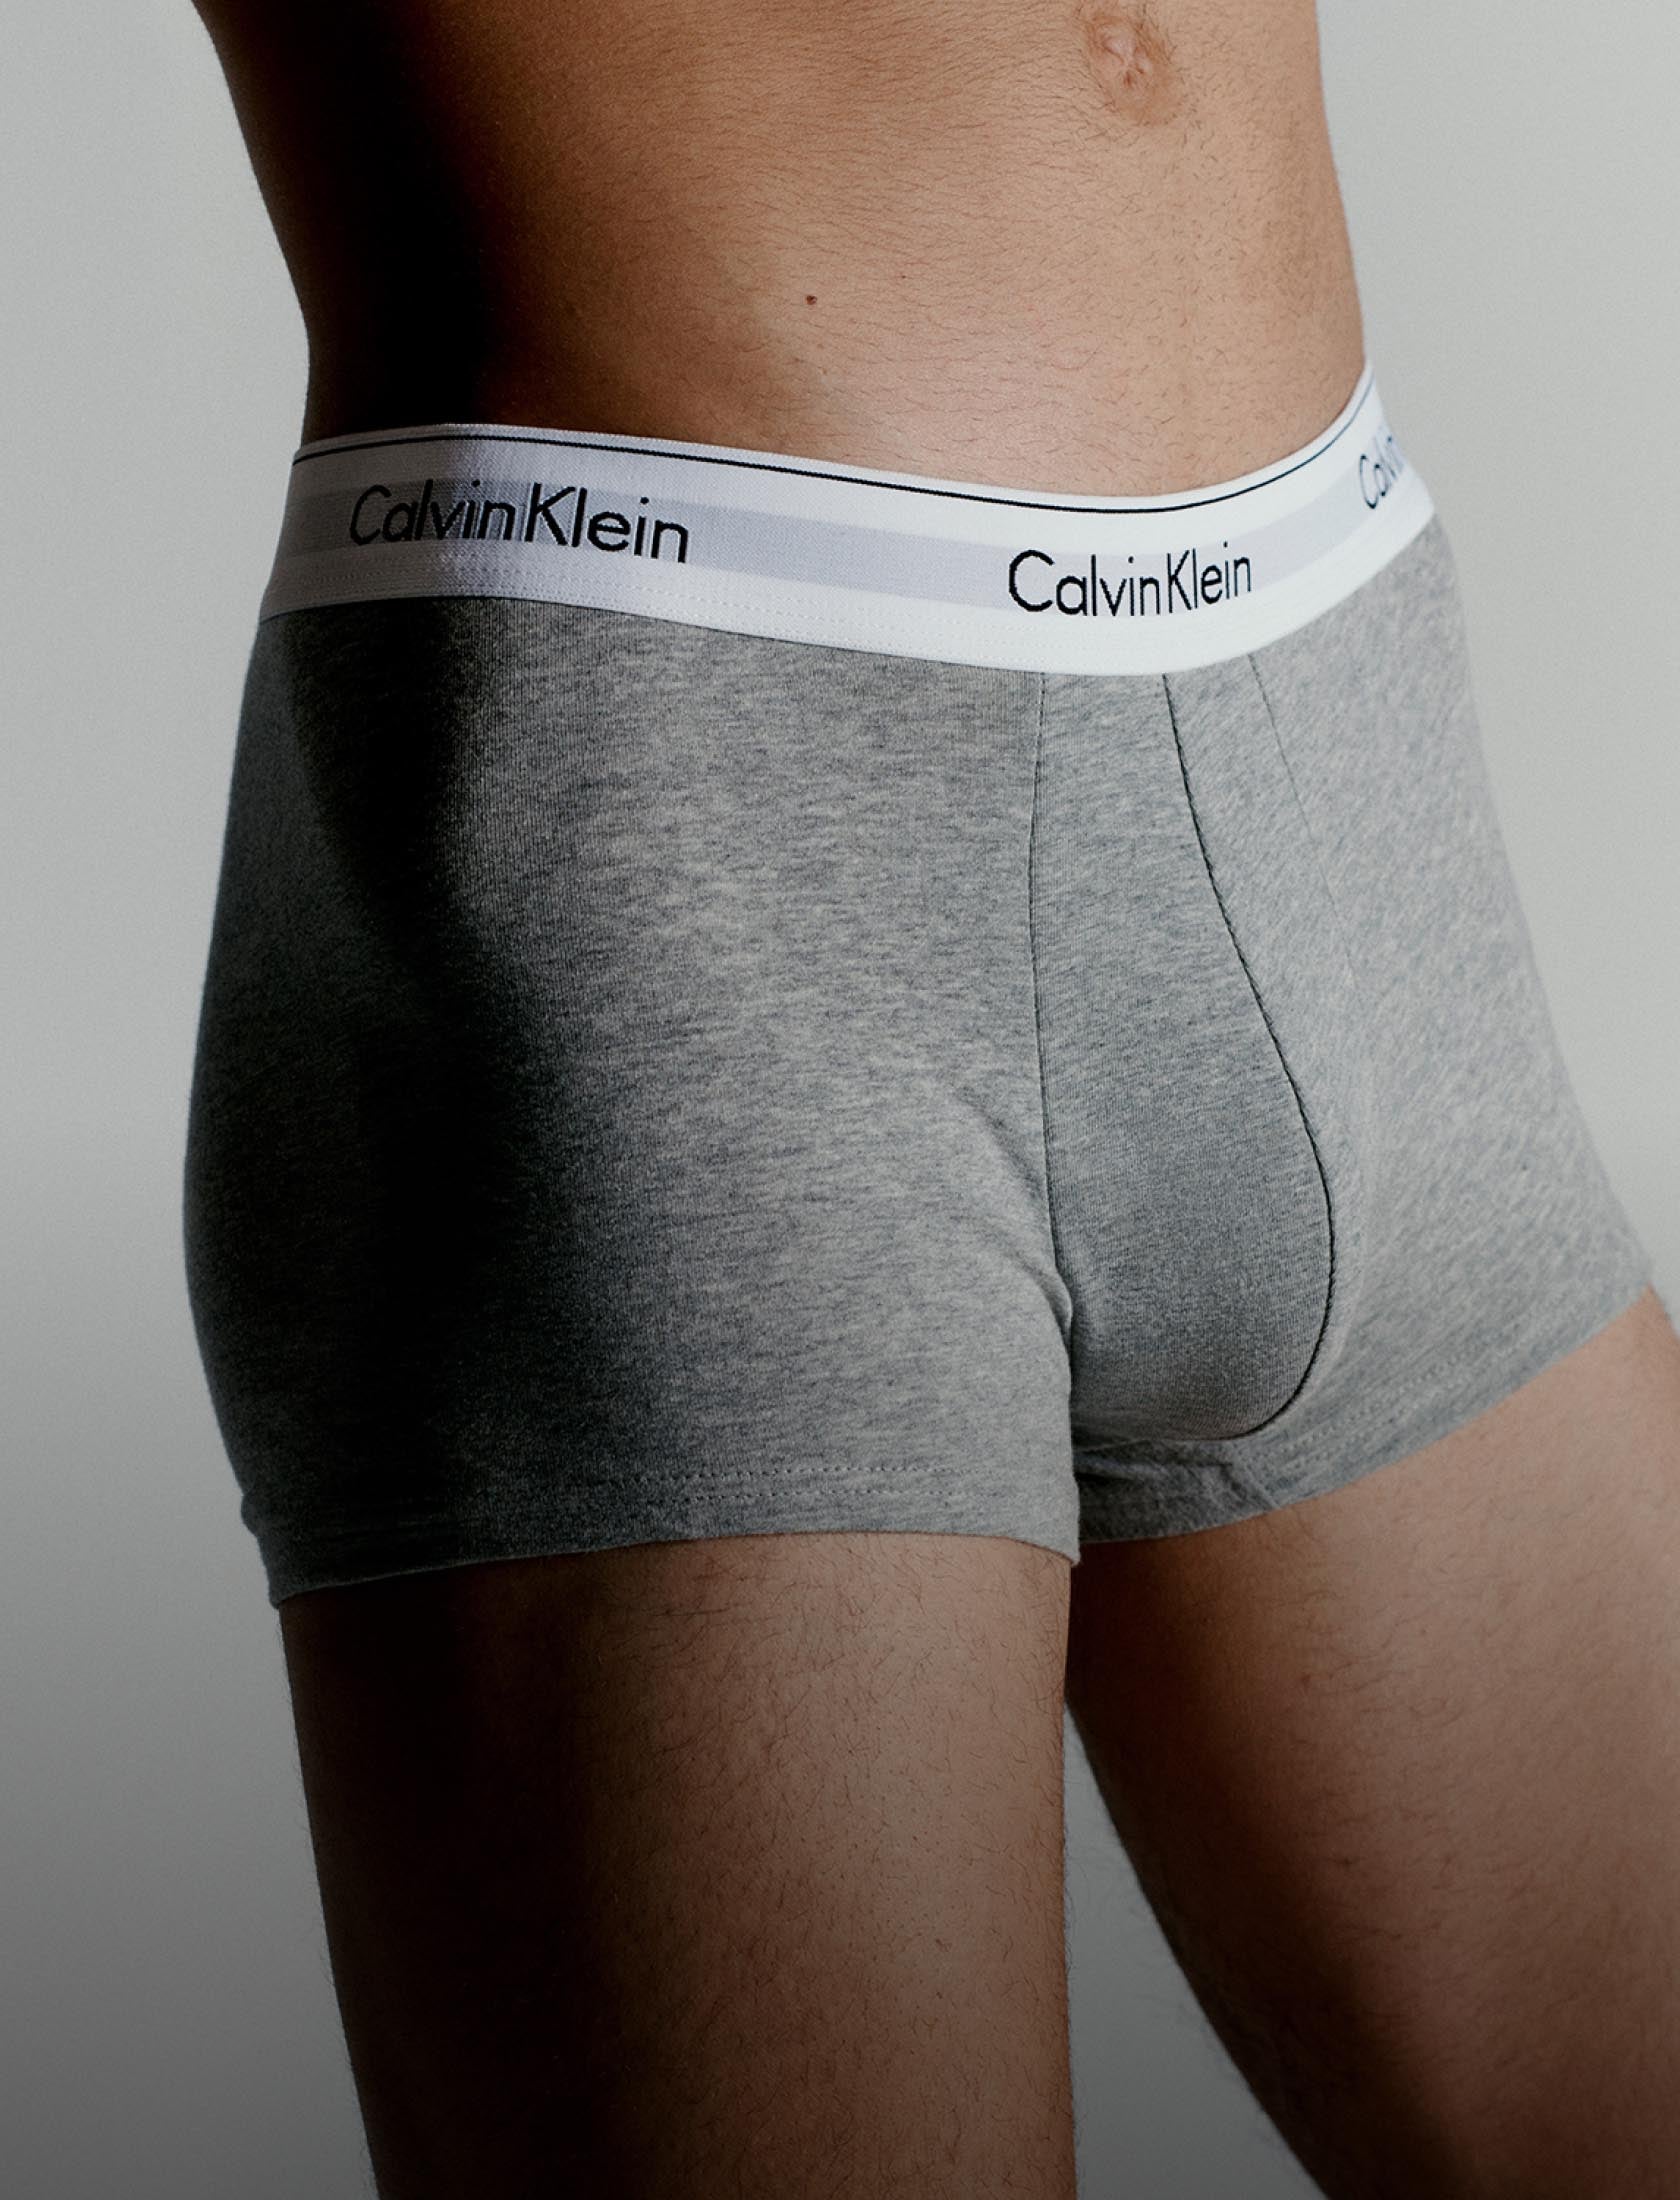 Calvin Klein Modern Cotton Short - Boxer - Briefs - Underwear -  Timarco.co.uk